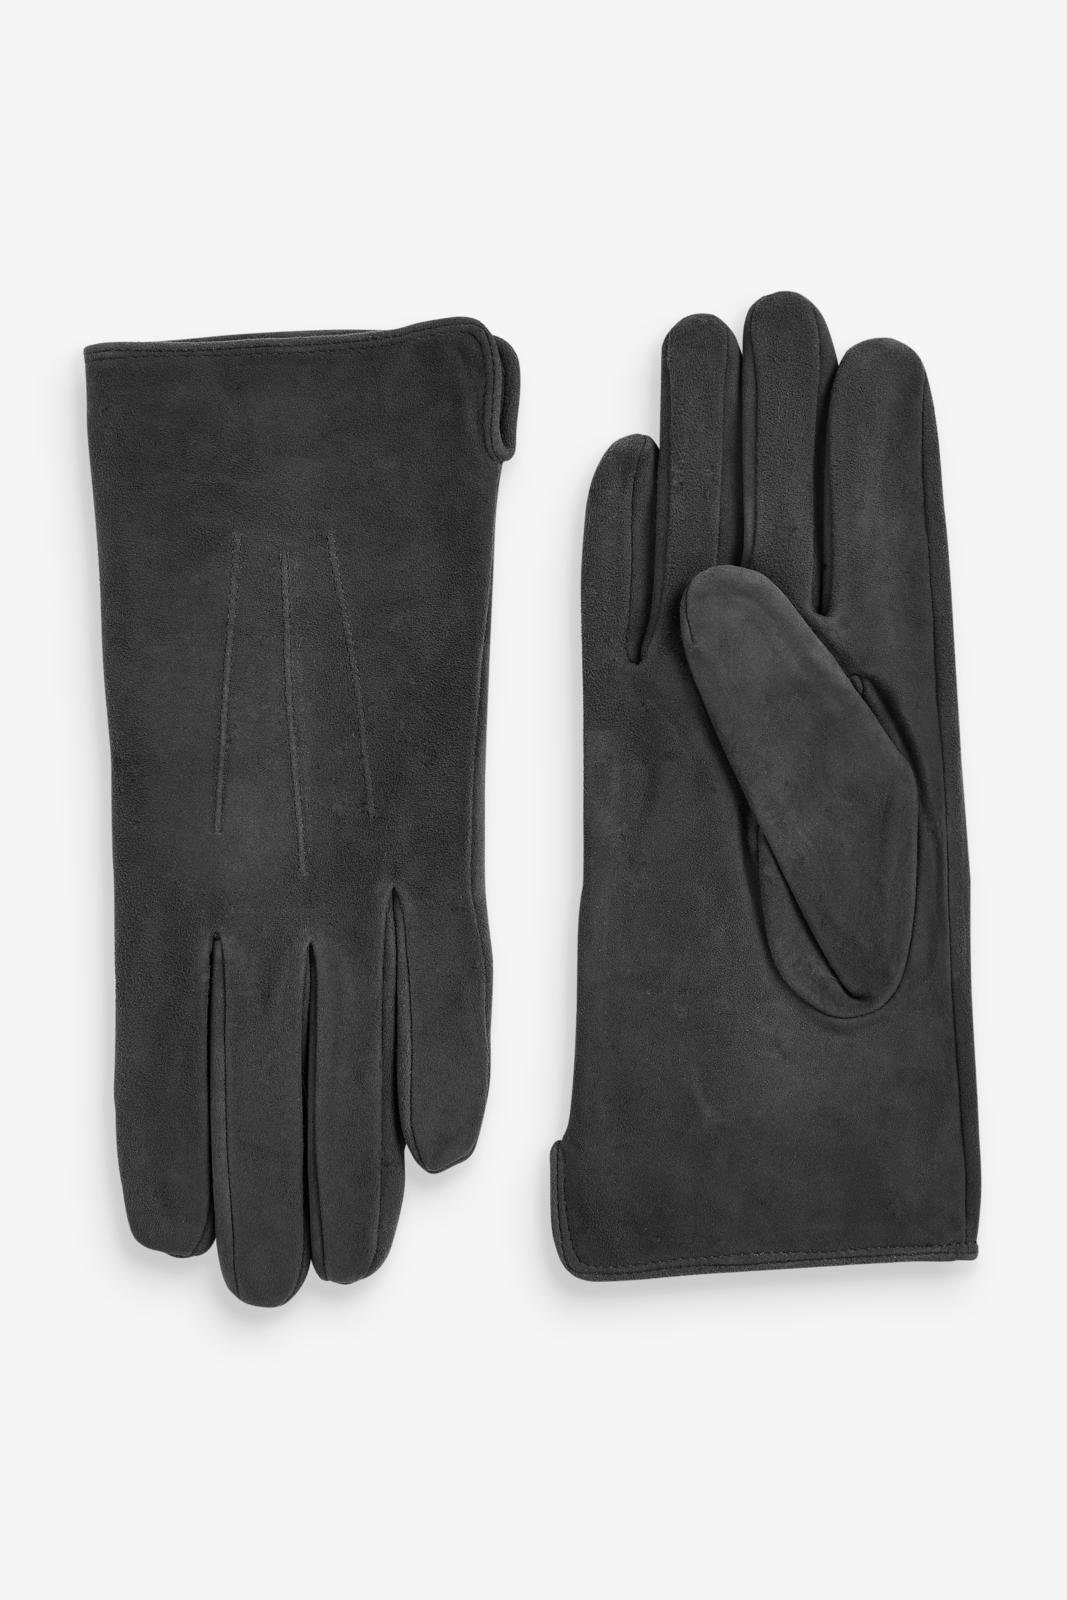 Next Strickhandschuhe Grey Charcoal Handschuhe